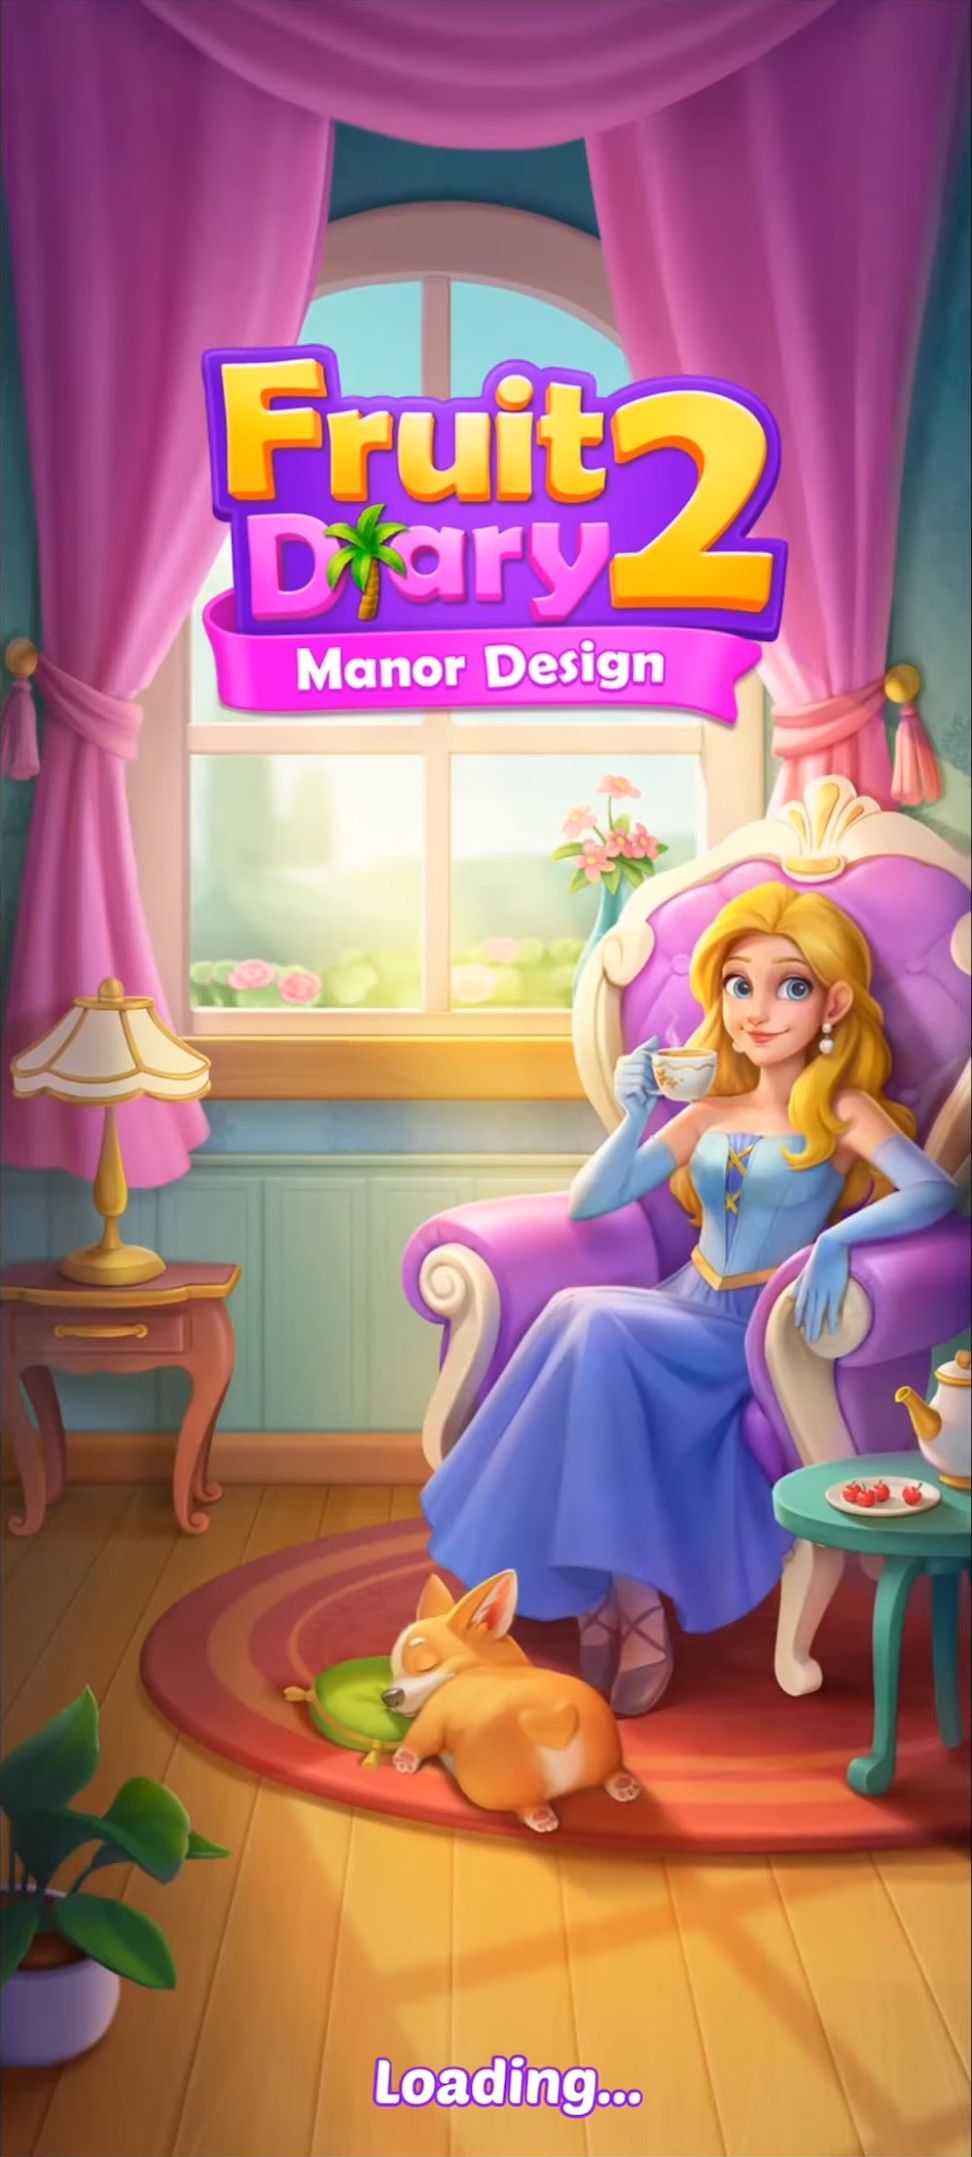 Скачать Fruit Diary 2: Manor Design: Android Три в ряд игра на телефон и планшет.